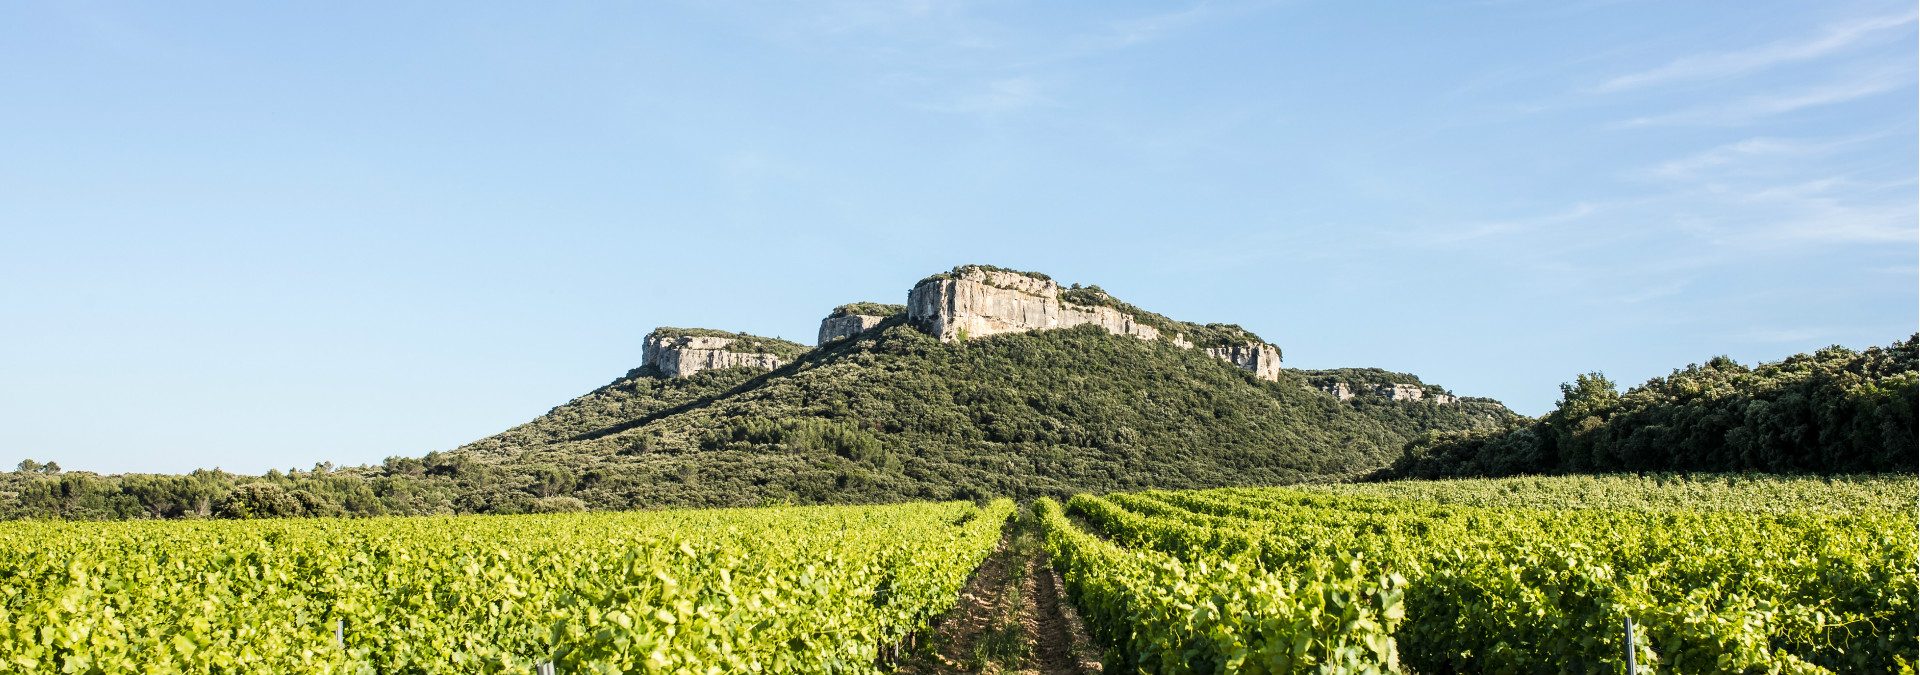 Château Signac